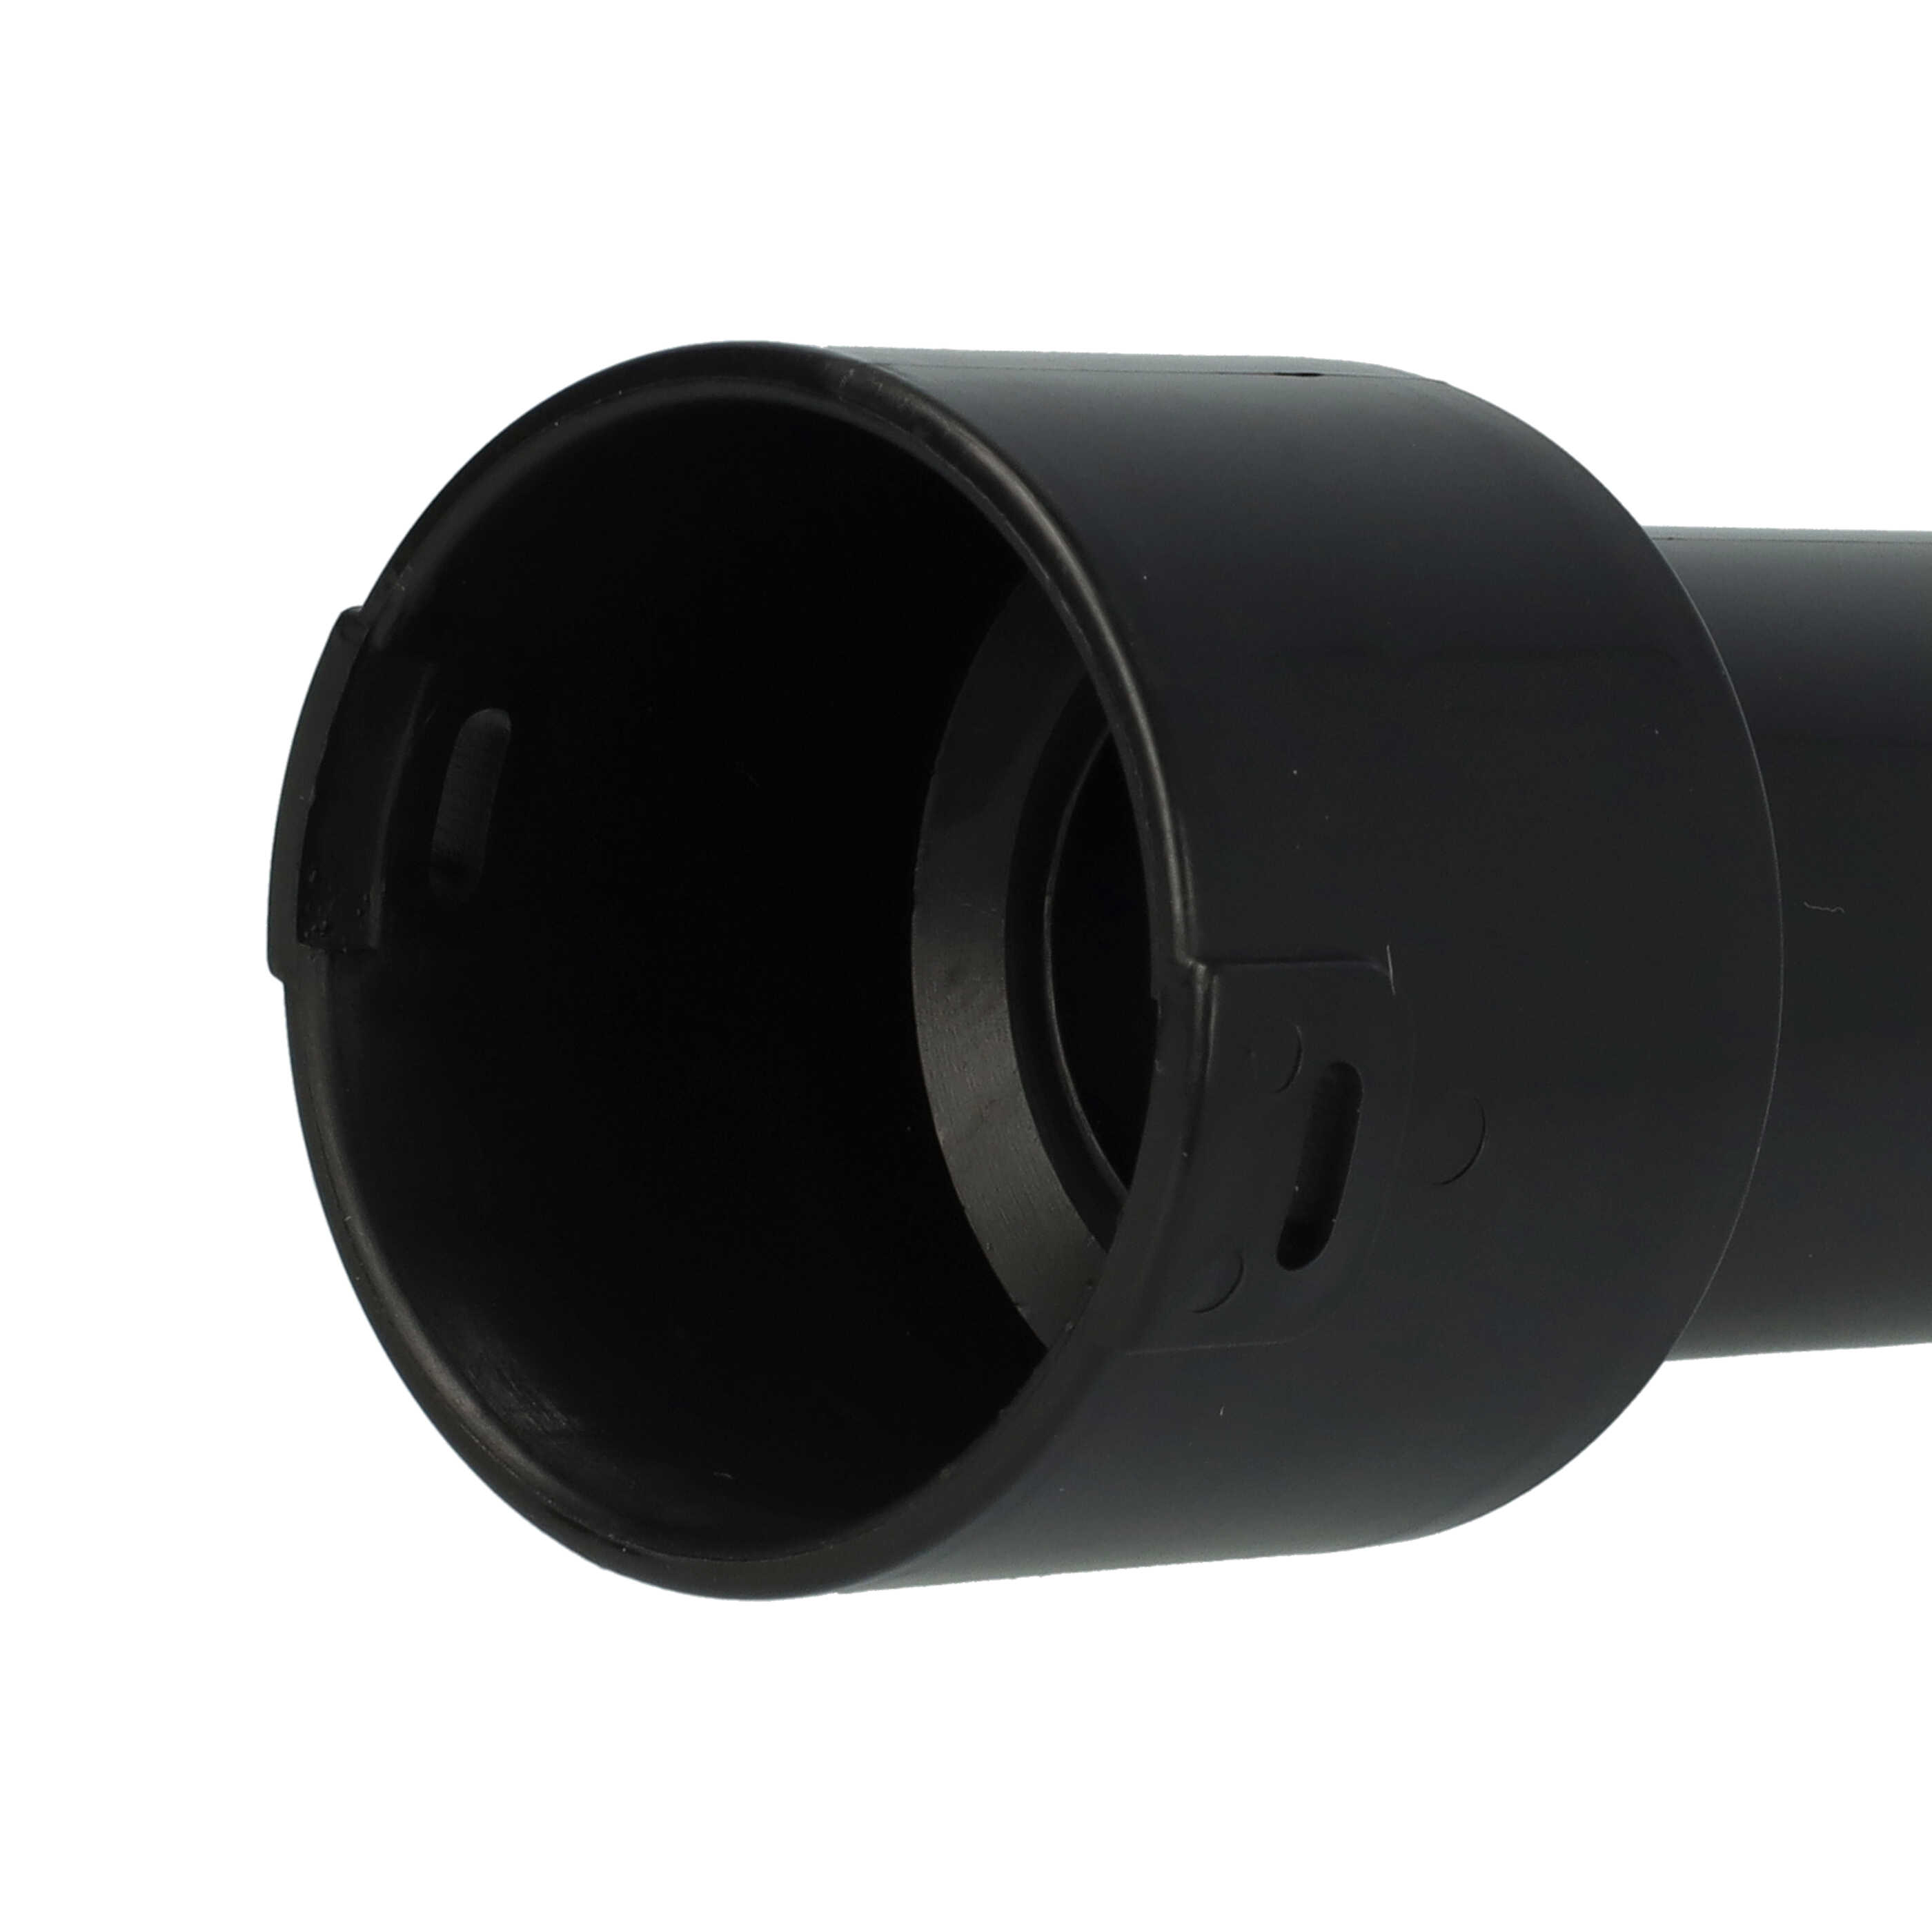 Adattatore per tubo flessibile per NBV190/1 Numatic aspiratori - 32 mm Connettore rotondo, sistema a clic